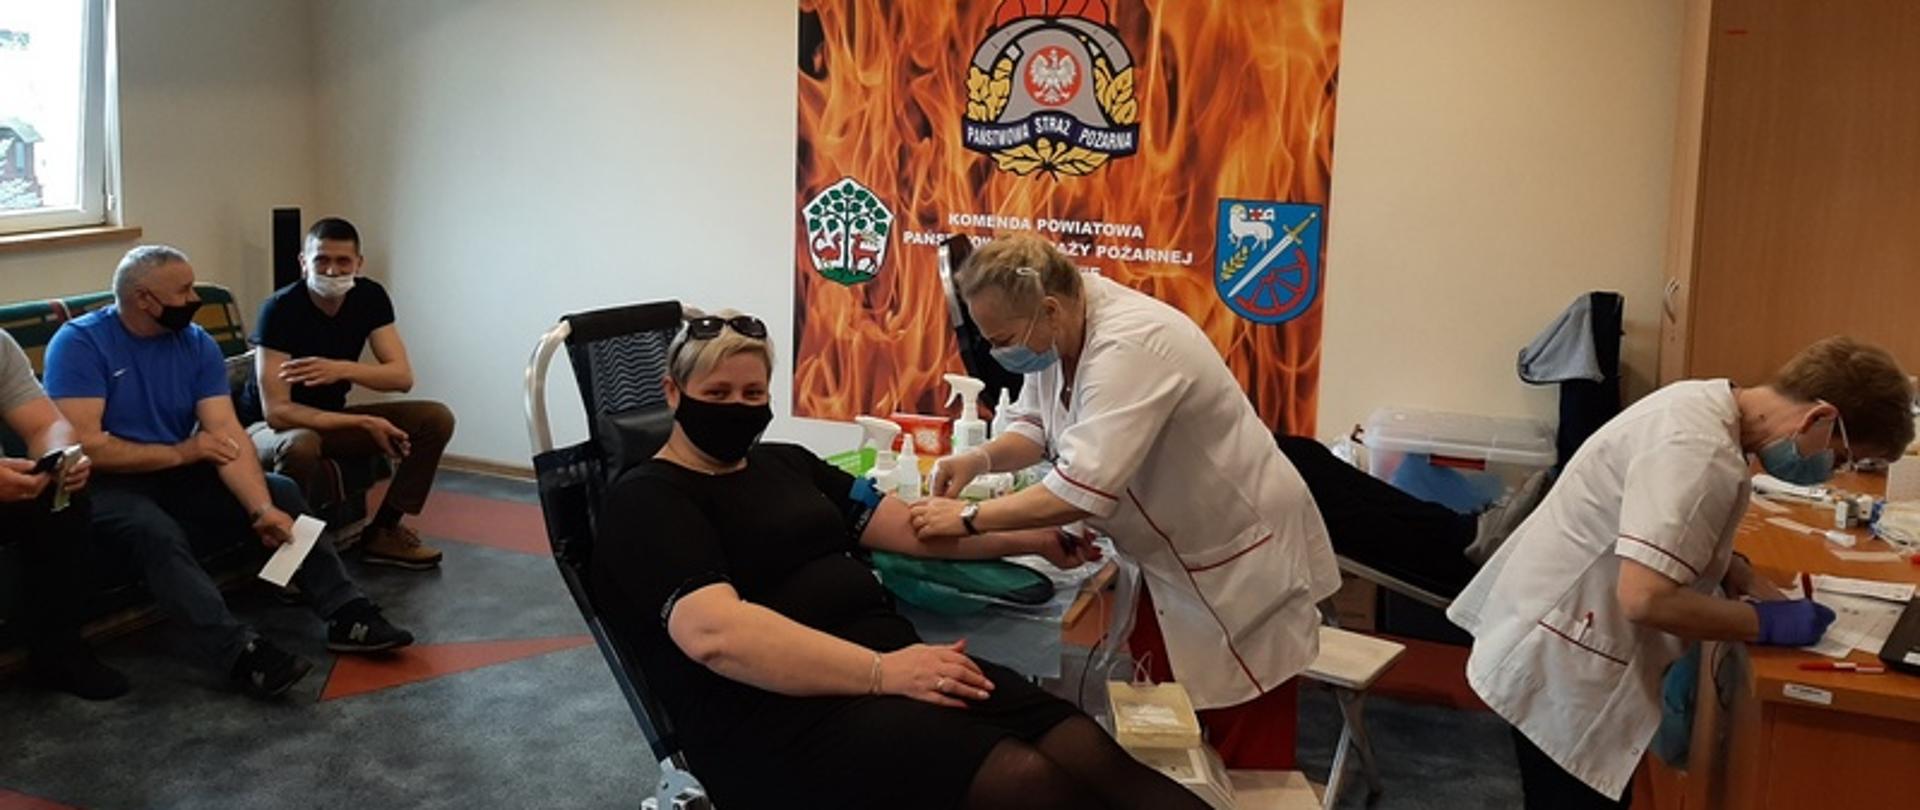 Akcja poboru krwi w siedzibie Komendy Powiatowej PSP w Braniewie